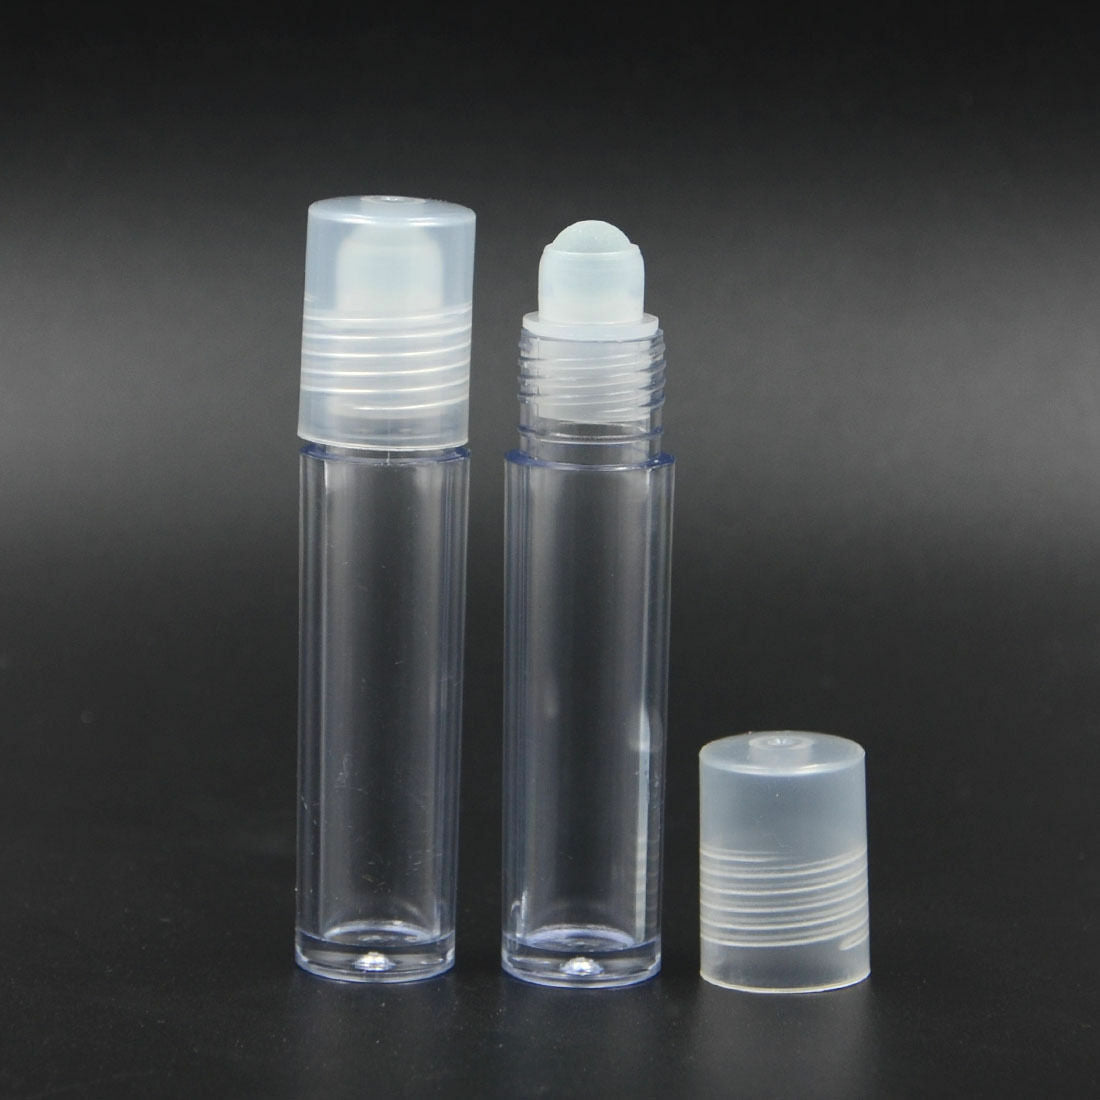 5pcs 10ml Empty Plastic Roll On Bottles Roller Ball Cologne Sport Perfume